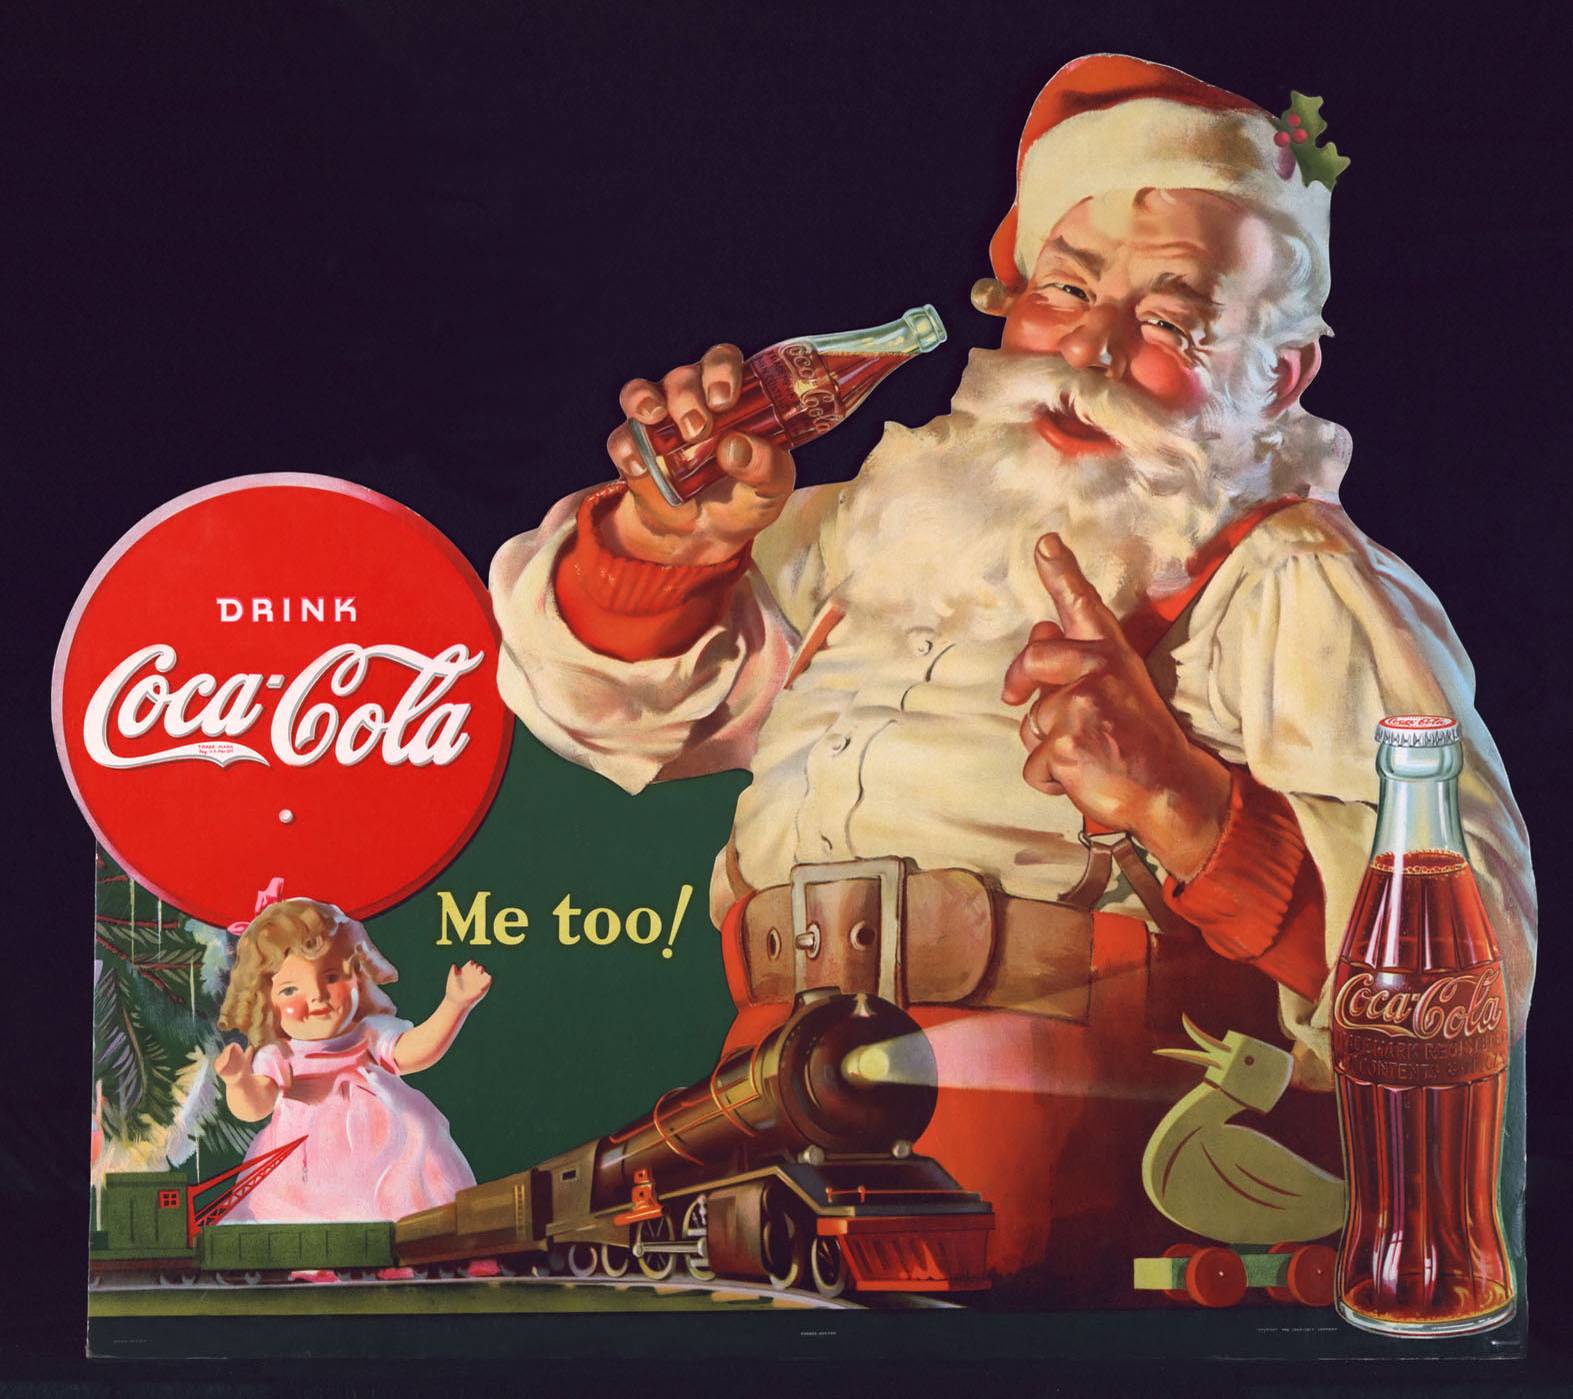 可口可乐"创造"了圣诞老人?这事其实没有那么简单